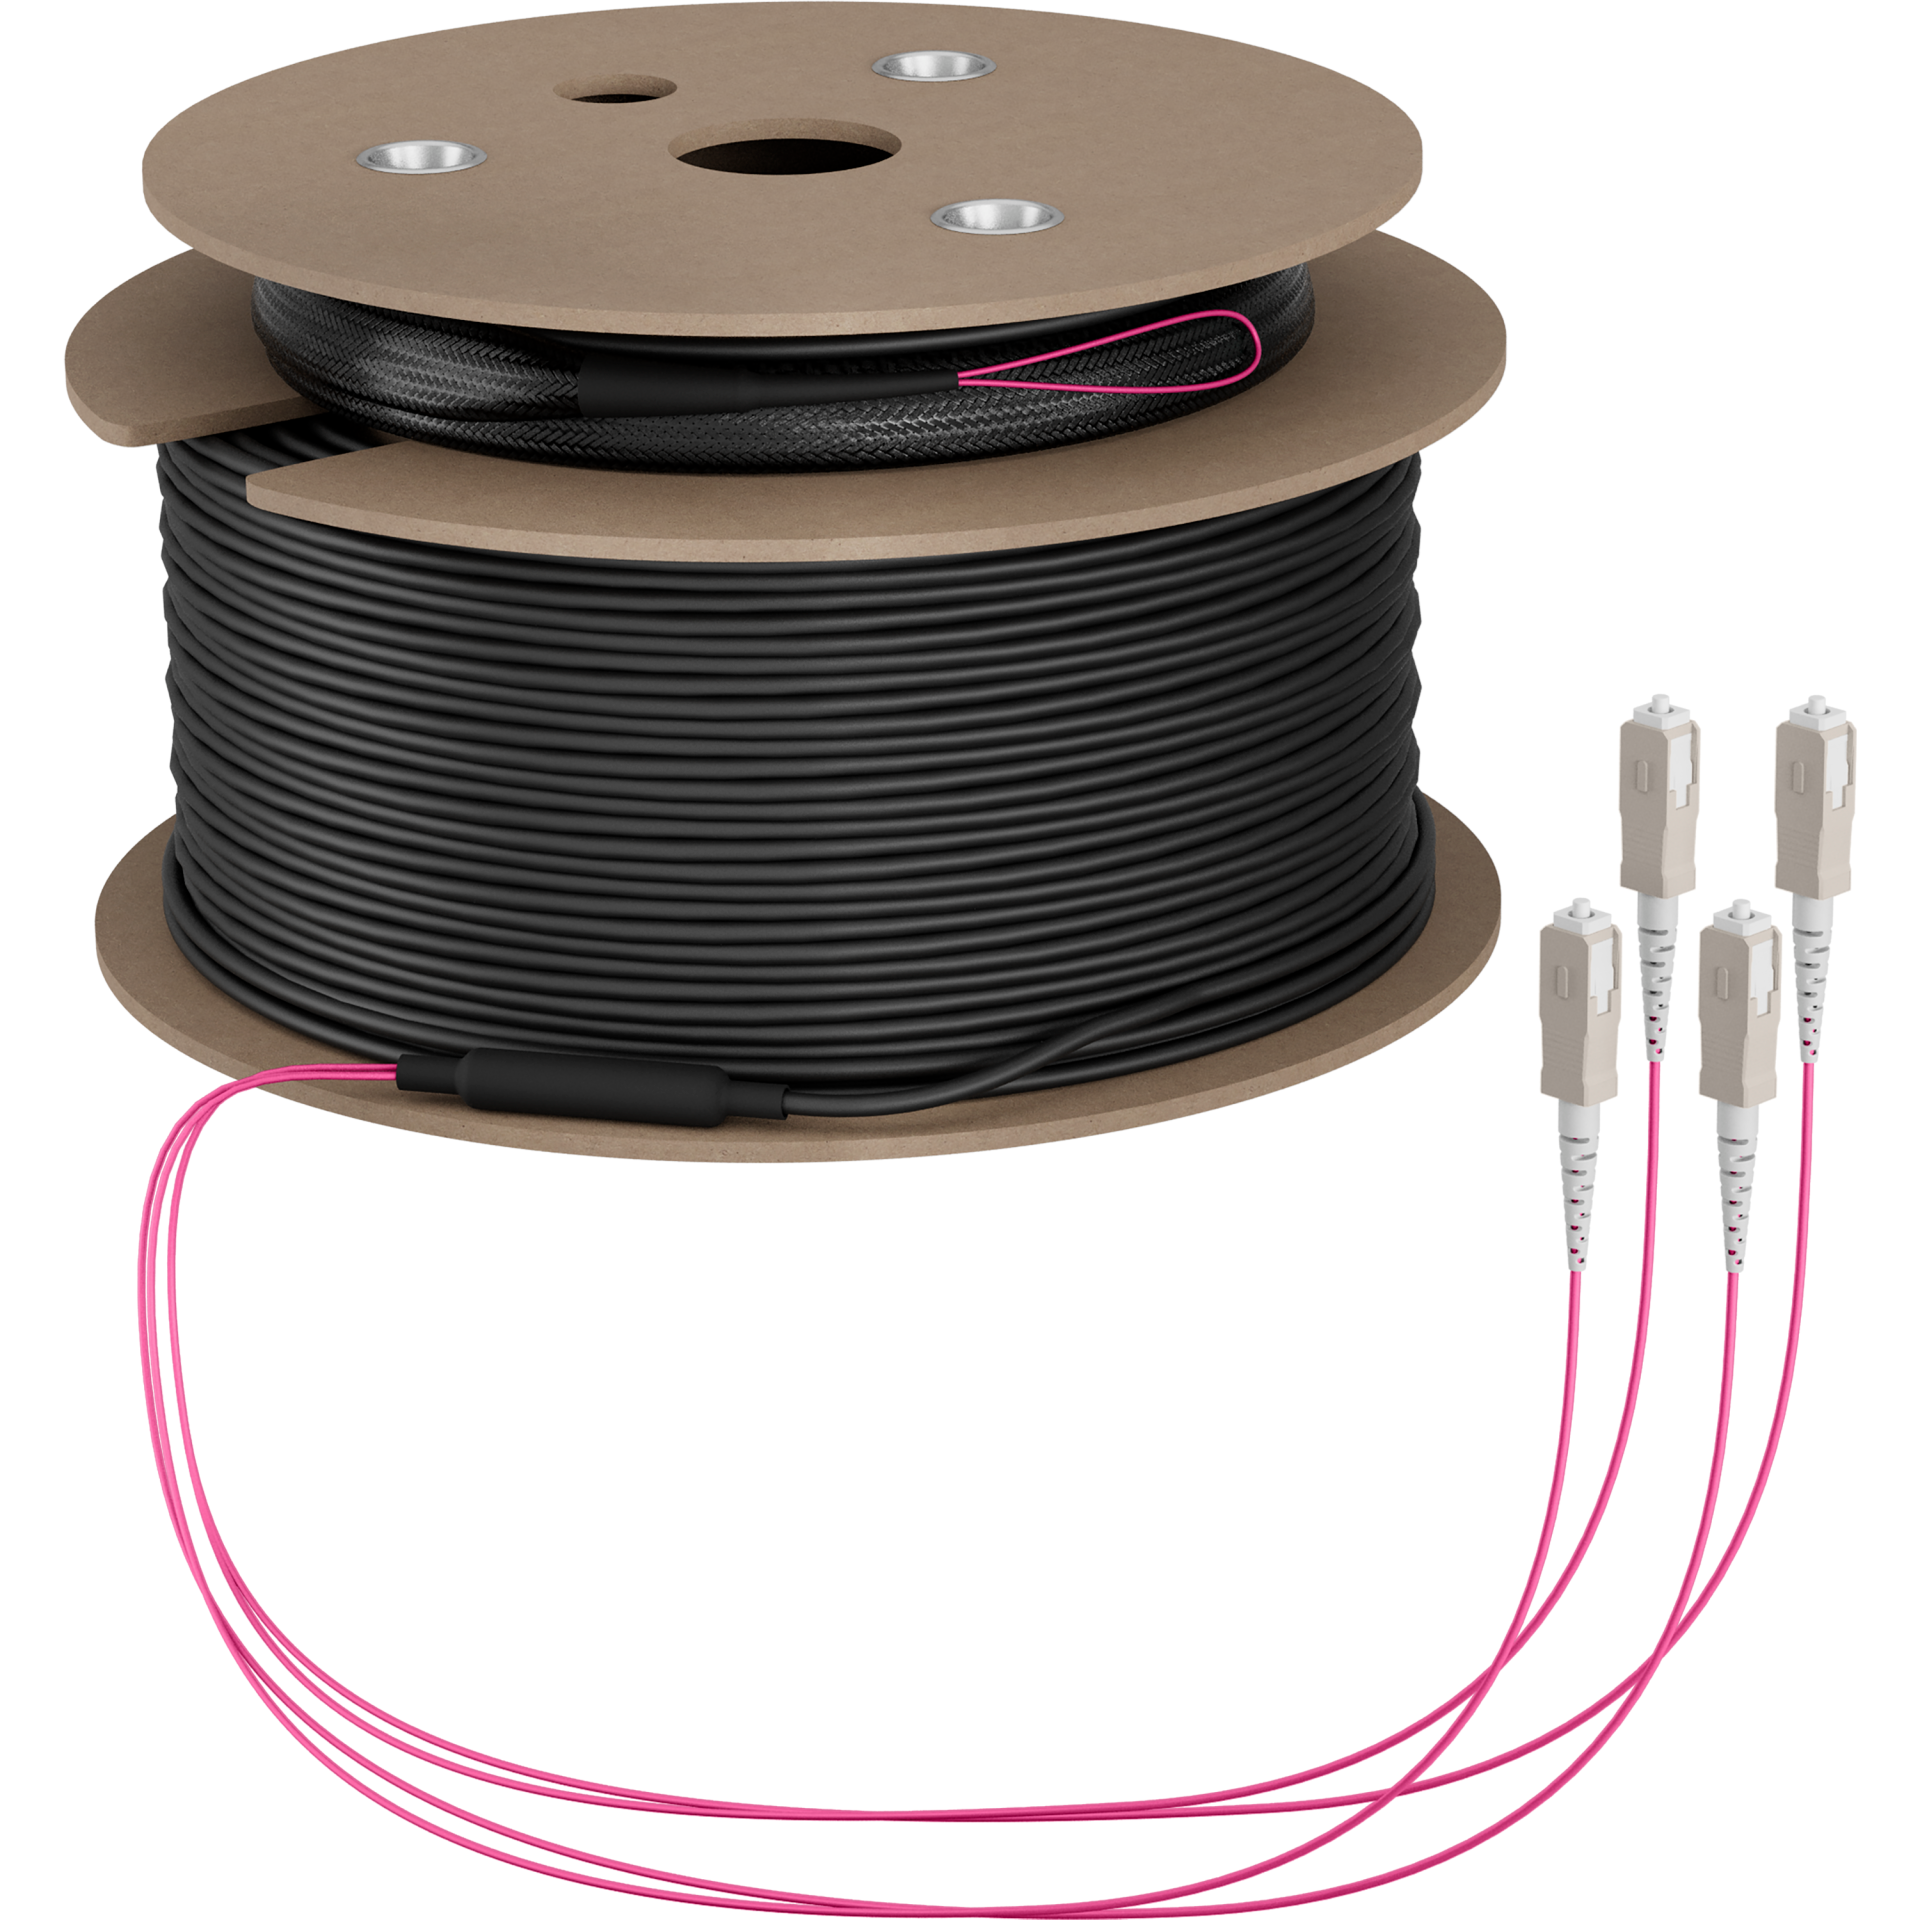 Trunk cable U-DQ(ZN)BH OM4 4G (1x4) SC-SC,110m Dca LSZH